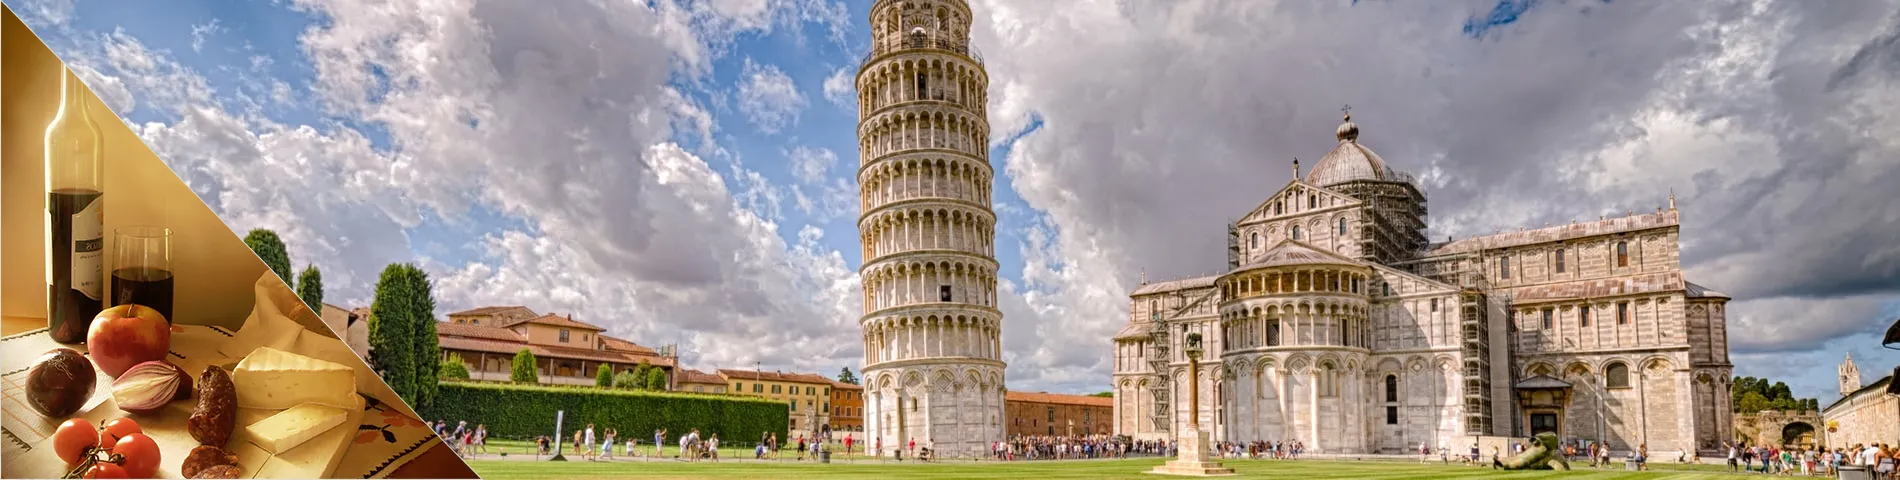 Pisa - Italian & Culture